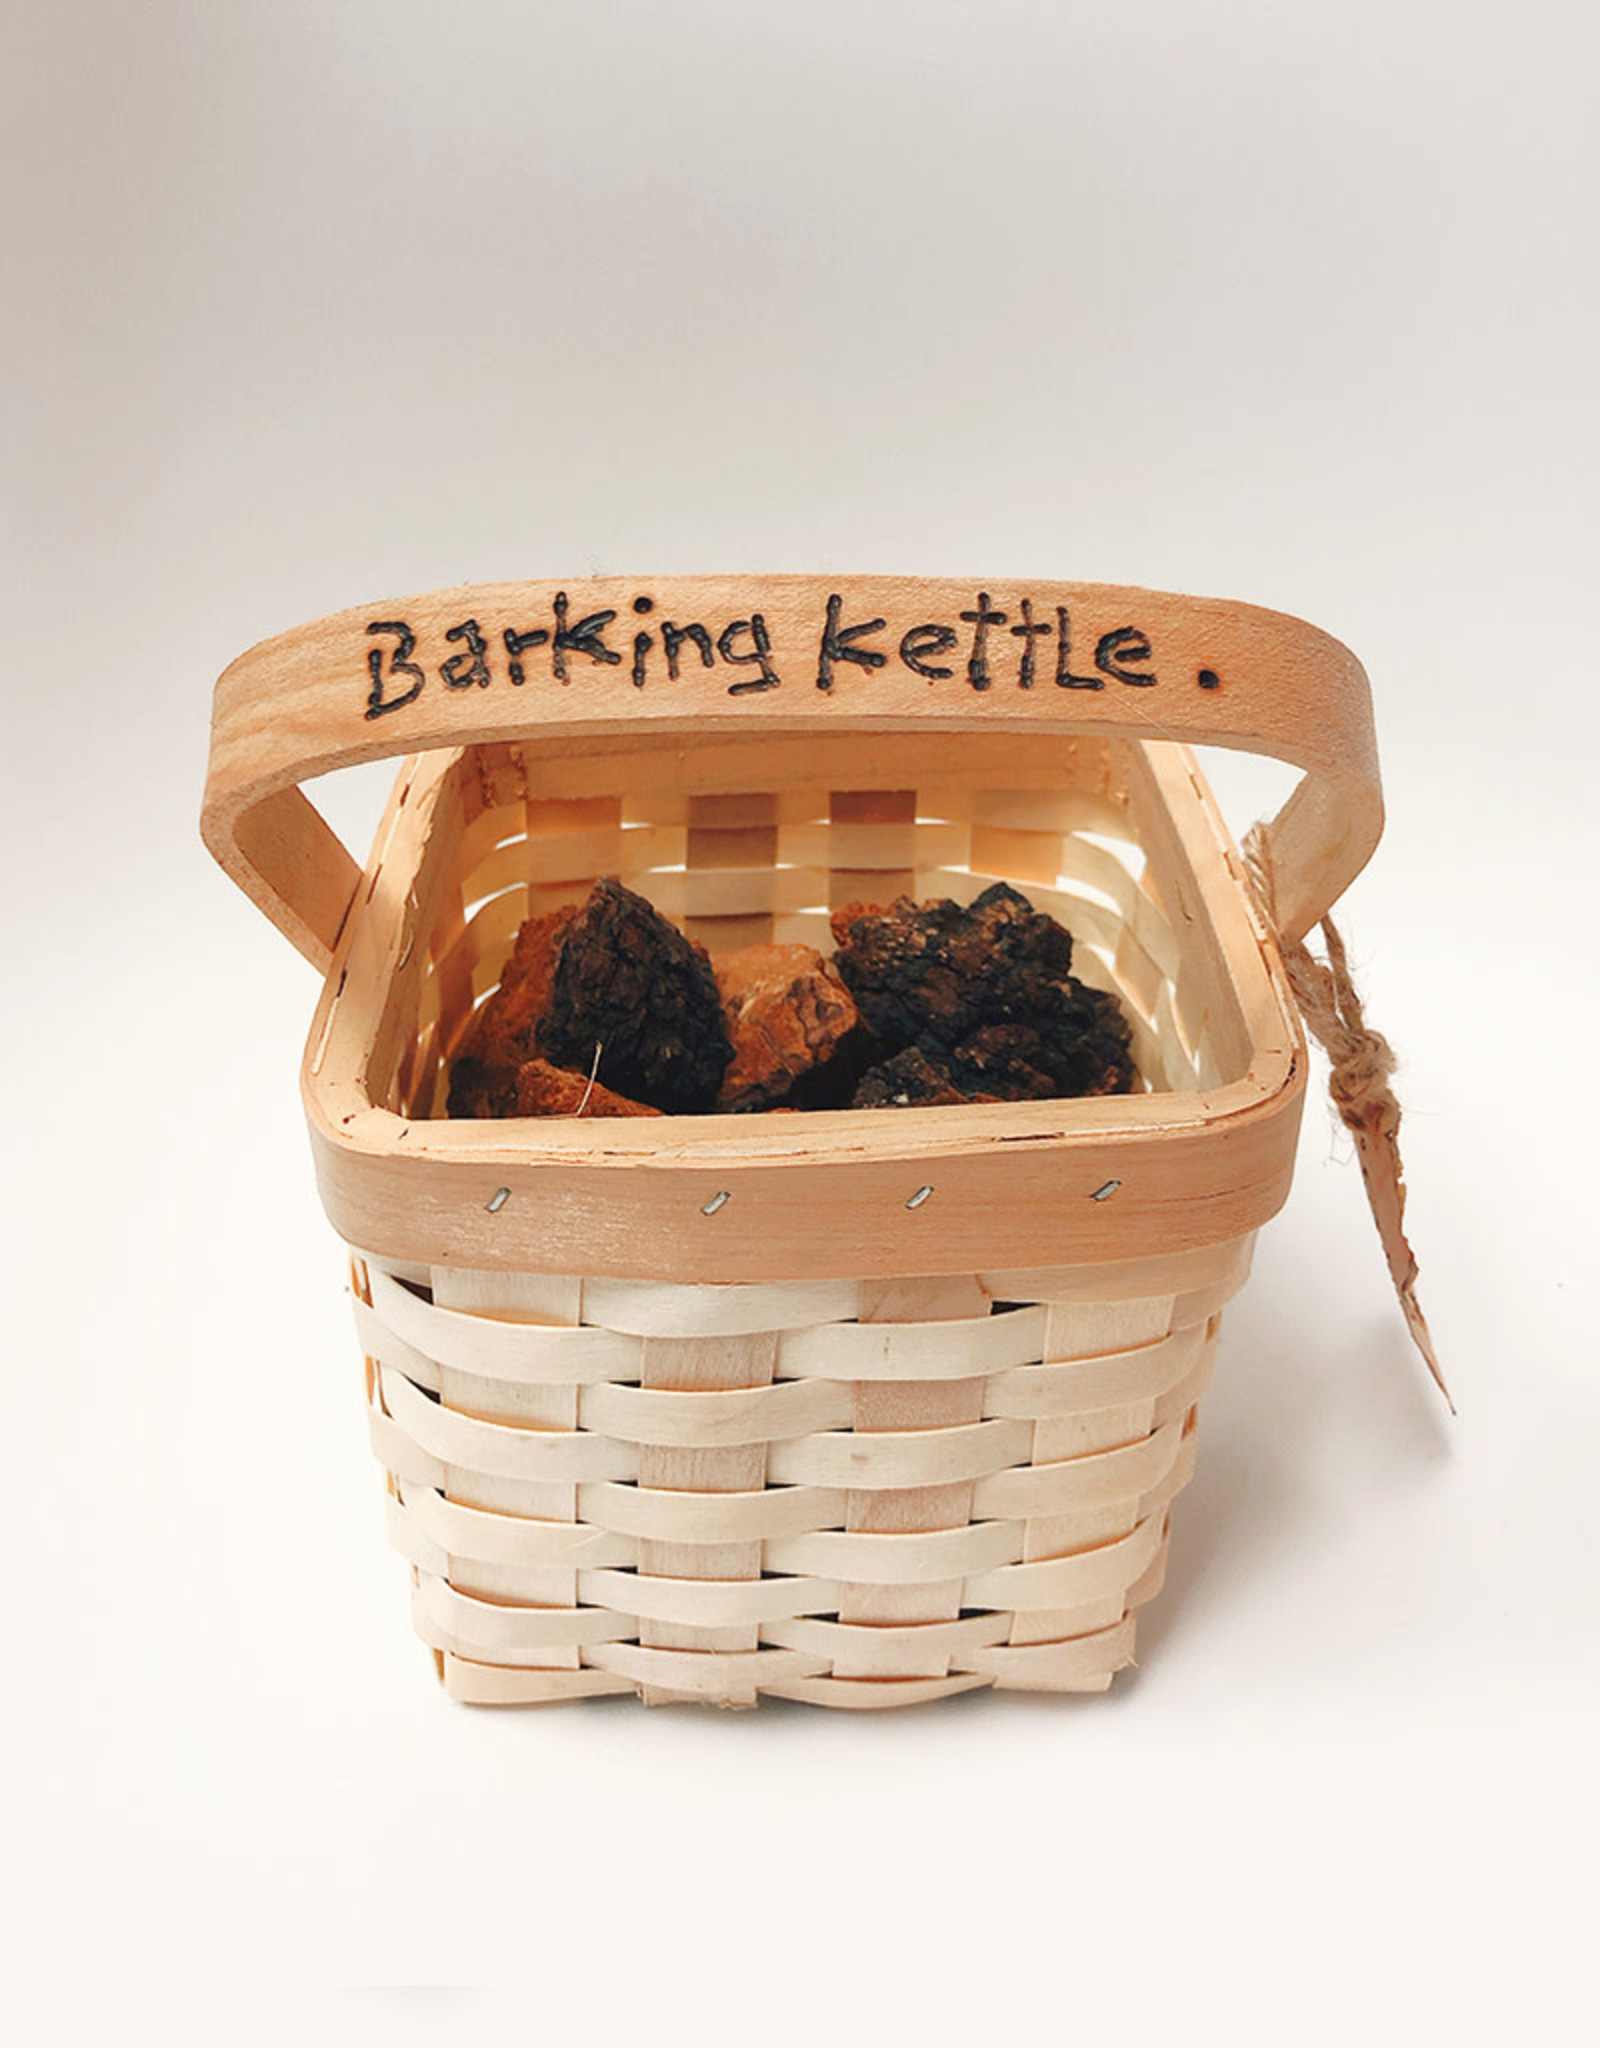 Barking Kettle Barking Kettle - Chaga Basket